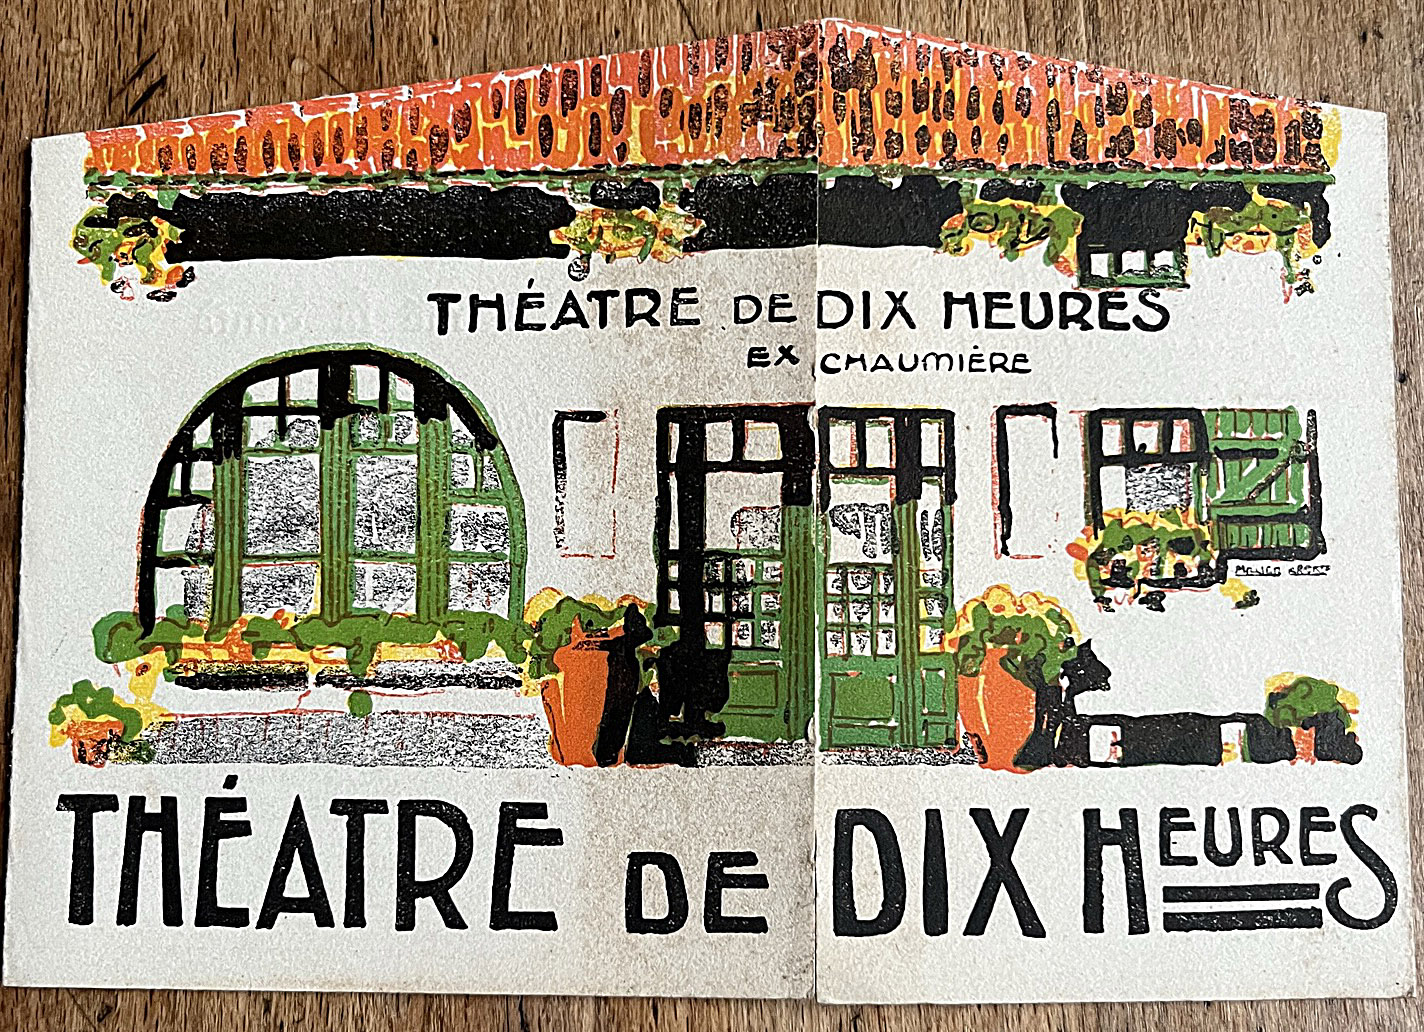 Le Théâtre de Dix Heures a ouvert en 1890 sous le nom de Cabaret des Arts. Don de Sophie Fontaine.